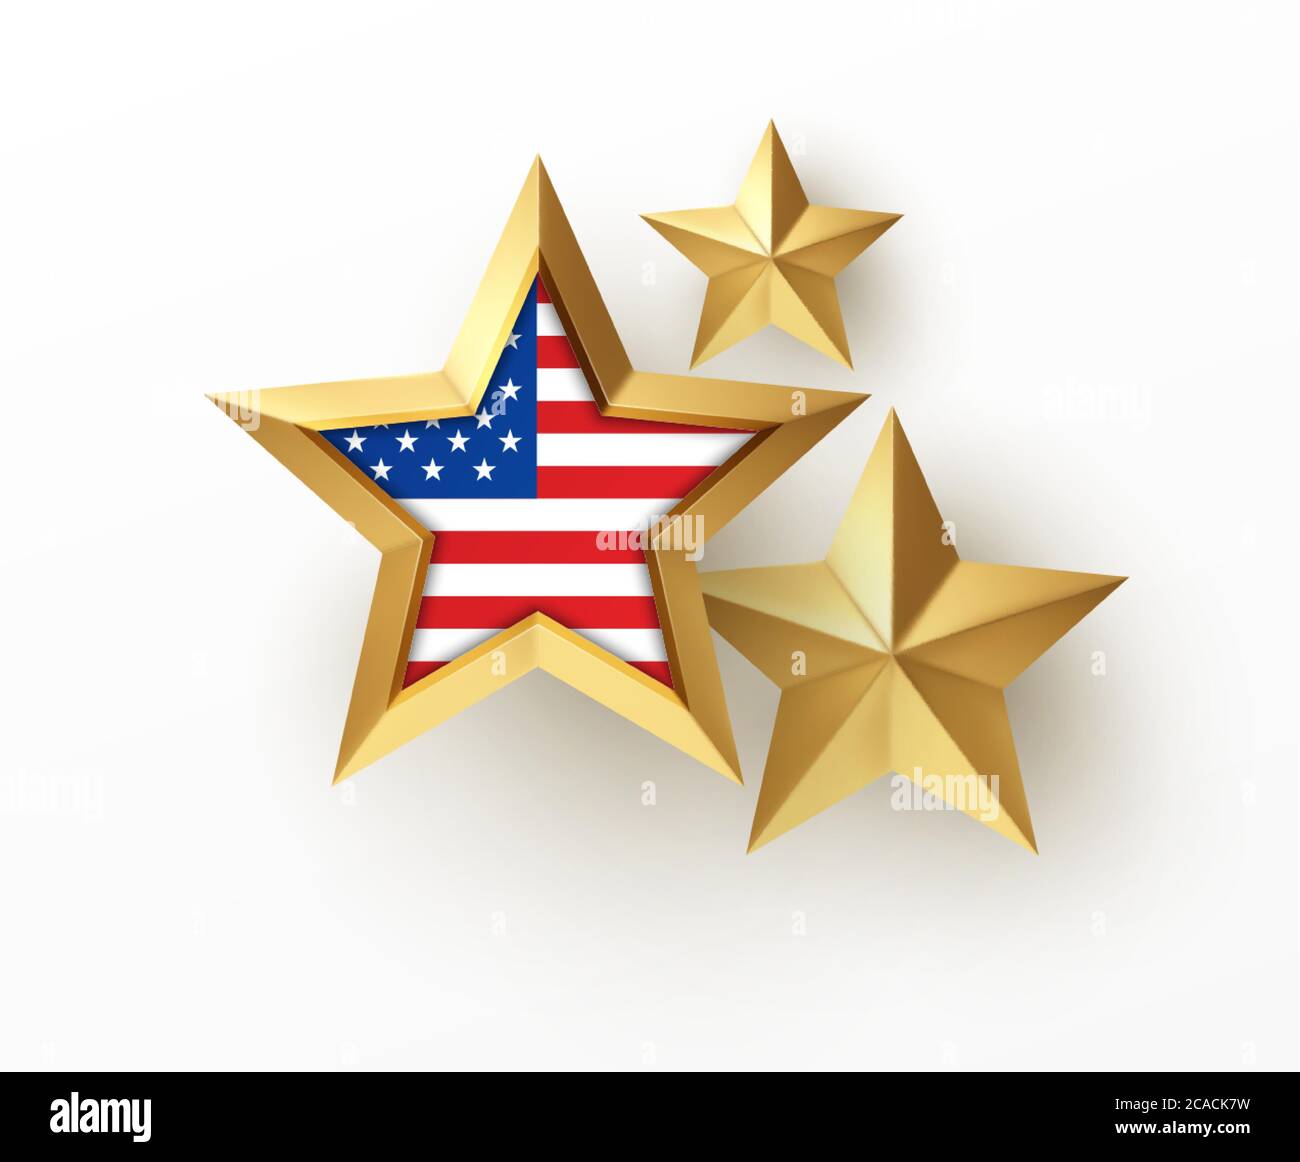 Golden realistischer 3d-Stern mit amerikanischer Flagge isoliert auf weißem Hintergrund. Gestaltungselement für patriotische amerikanische Plakate, Karten. Vektorgrafik Stock Vektor